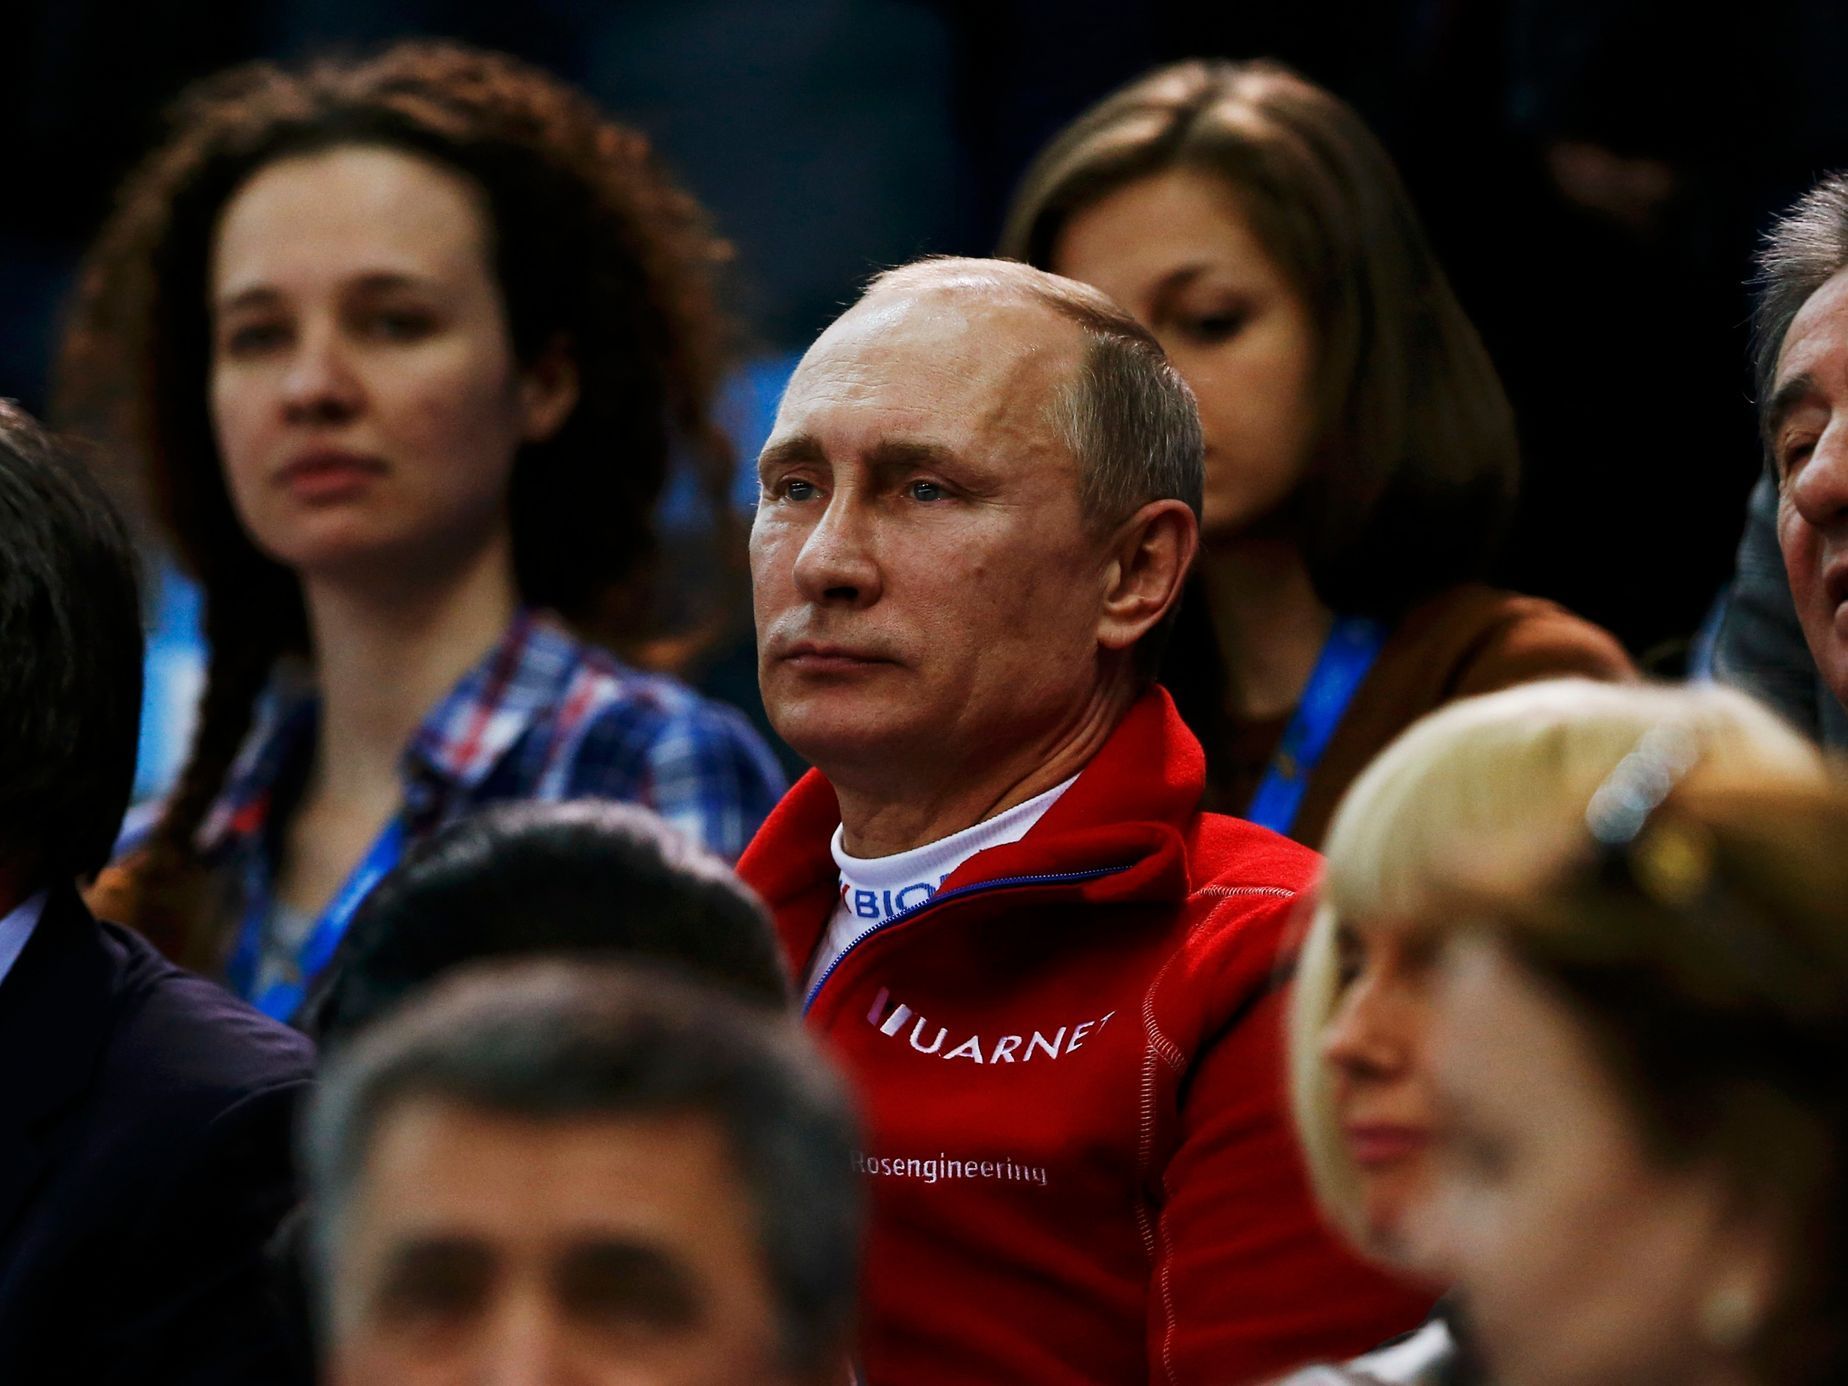 Soči 2014: Putin, (krasobruslení, freestyle, finále), emoce